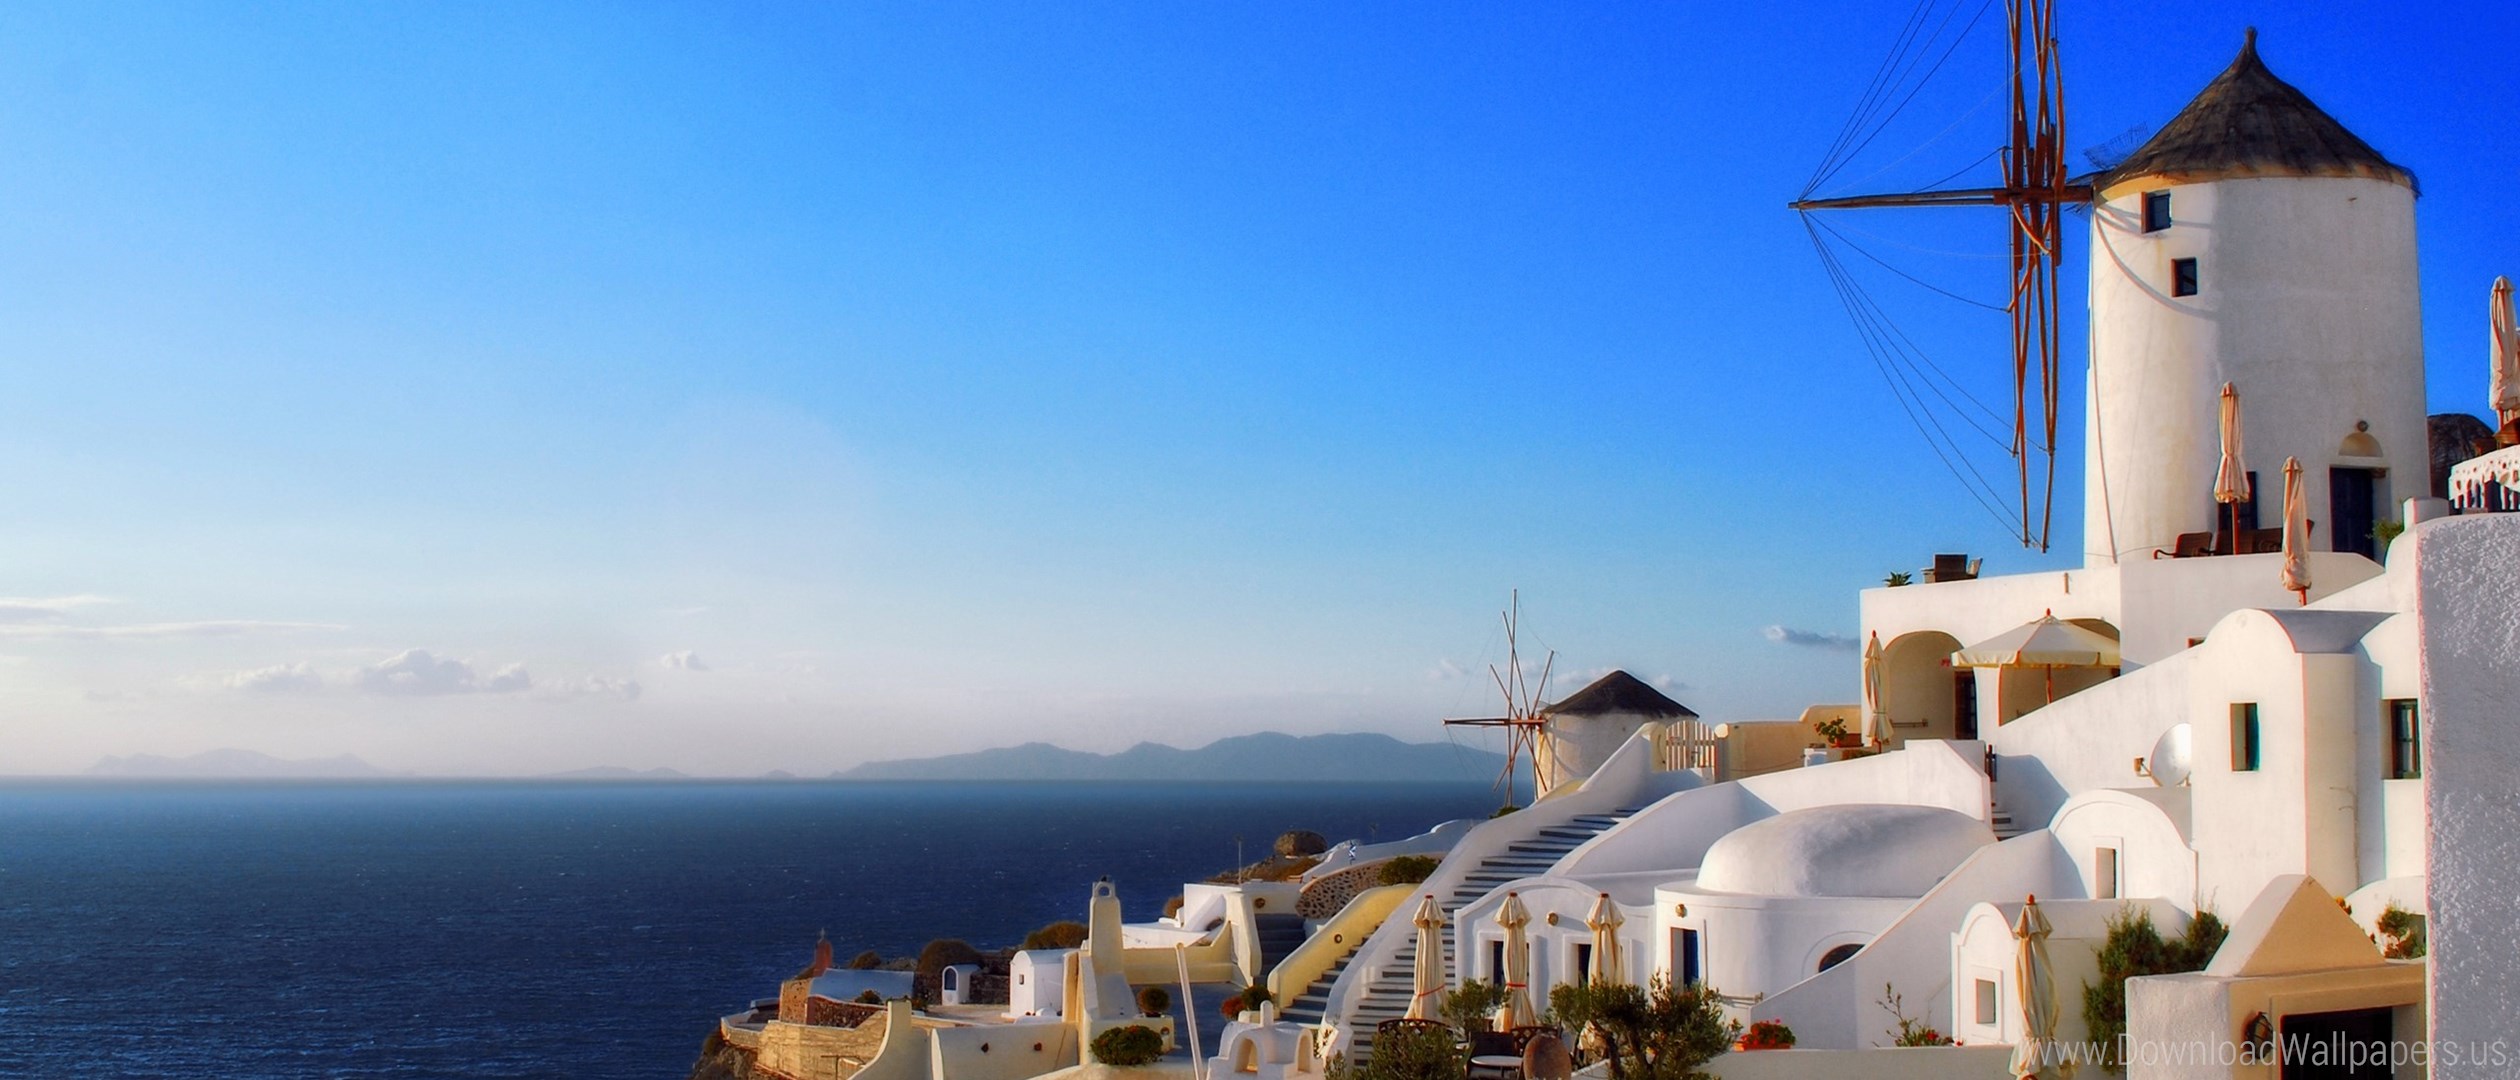 Summer Greece , HD Wallpaper & Backgrounds